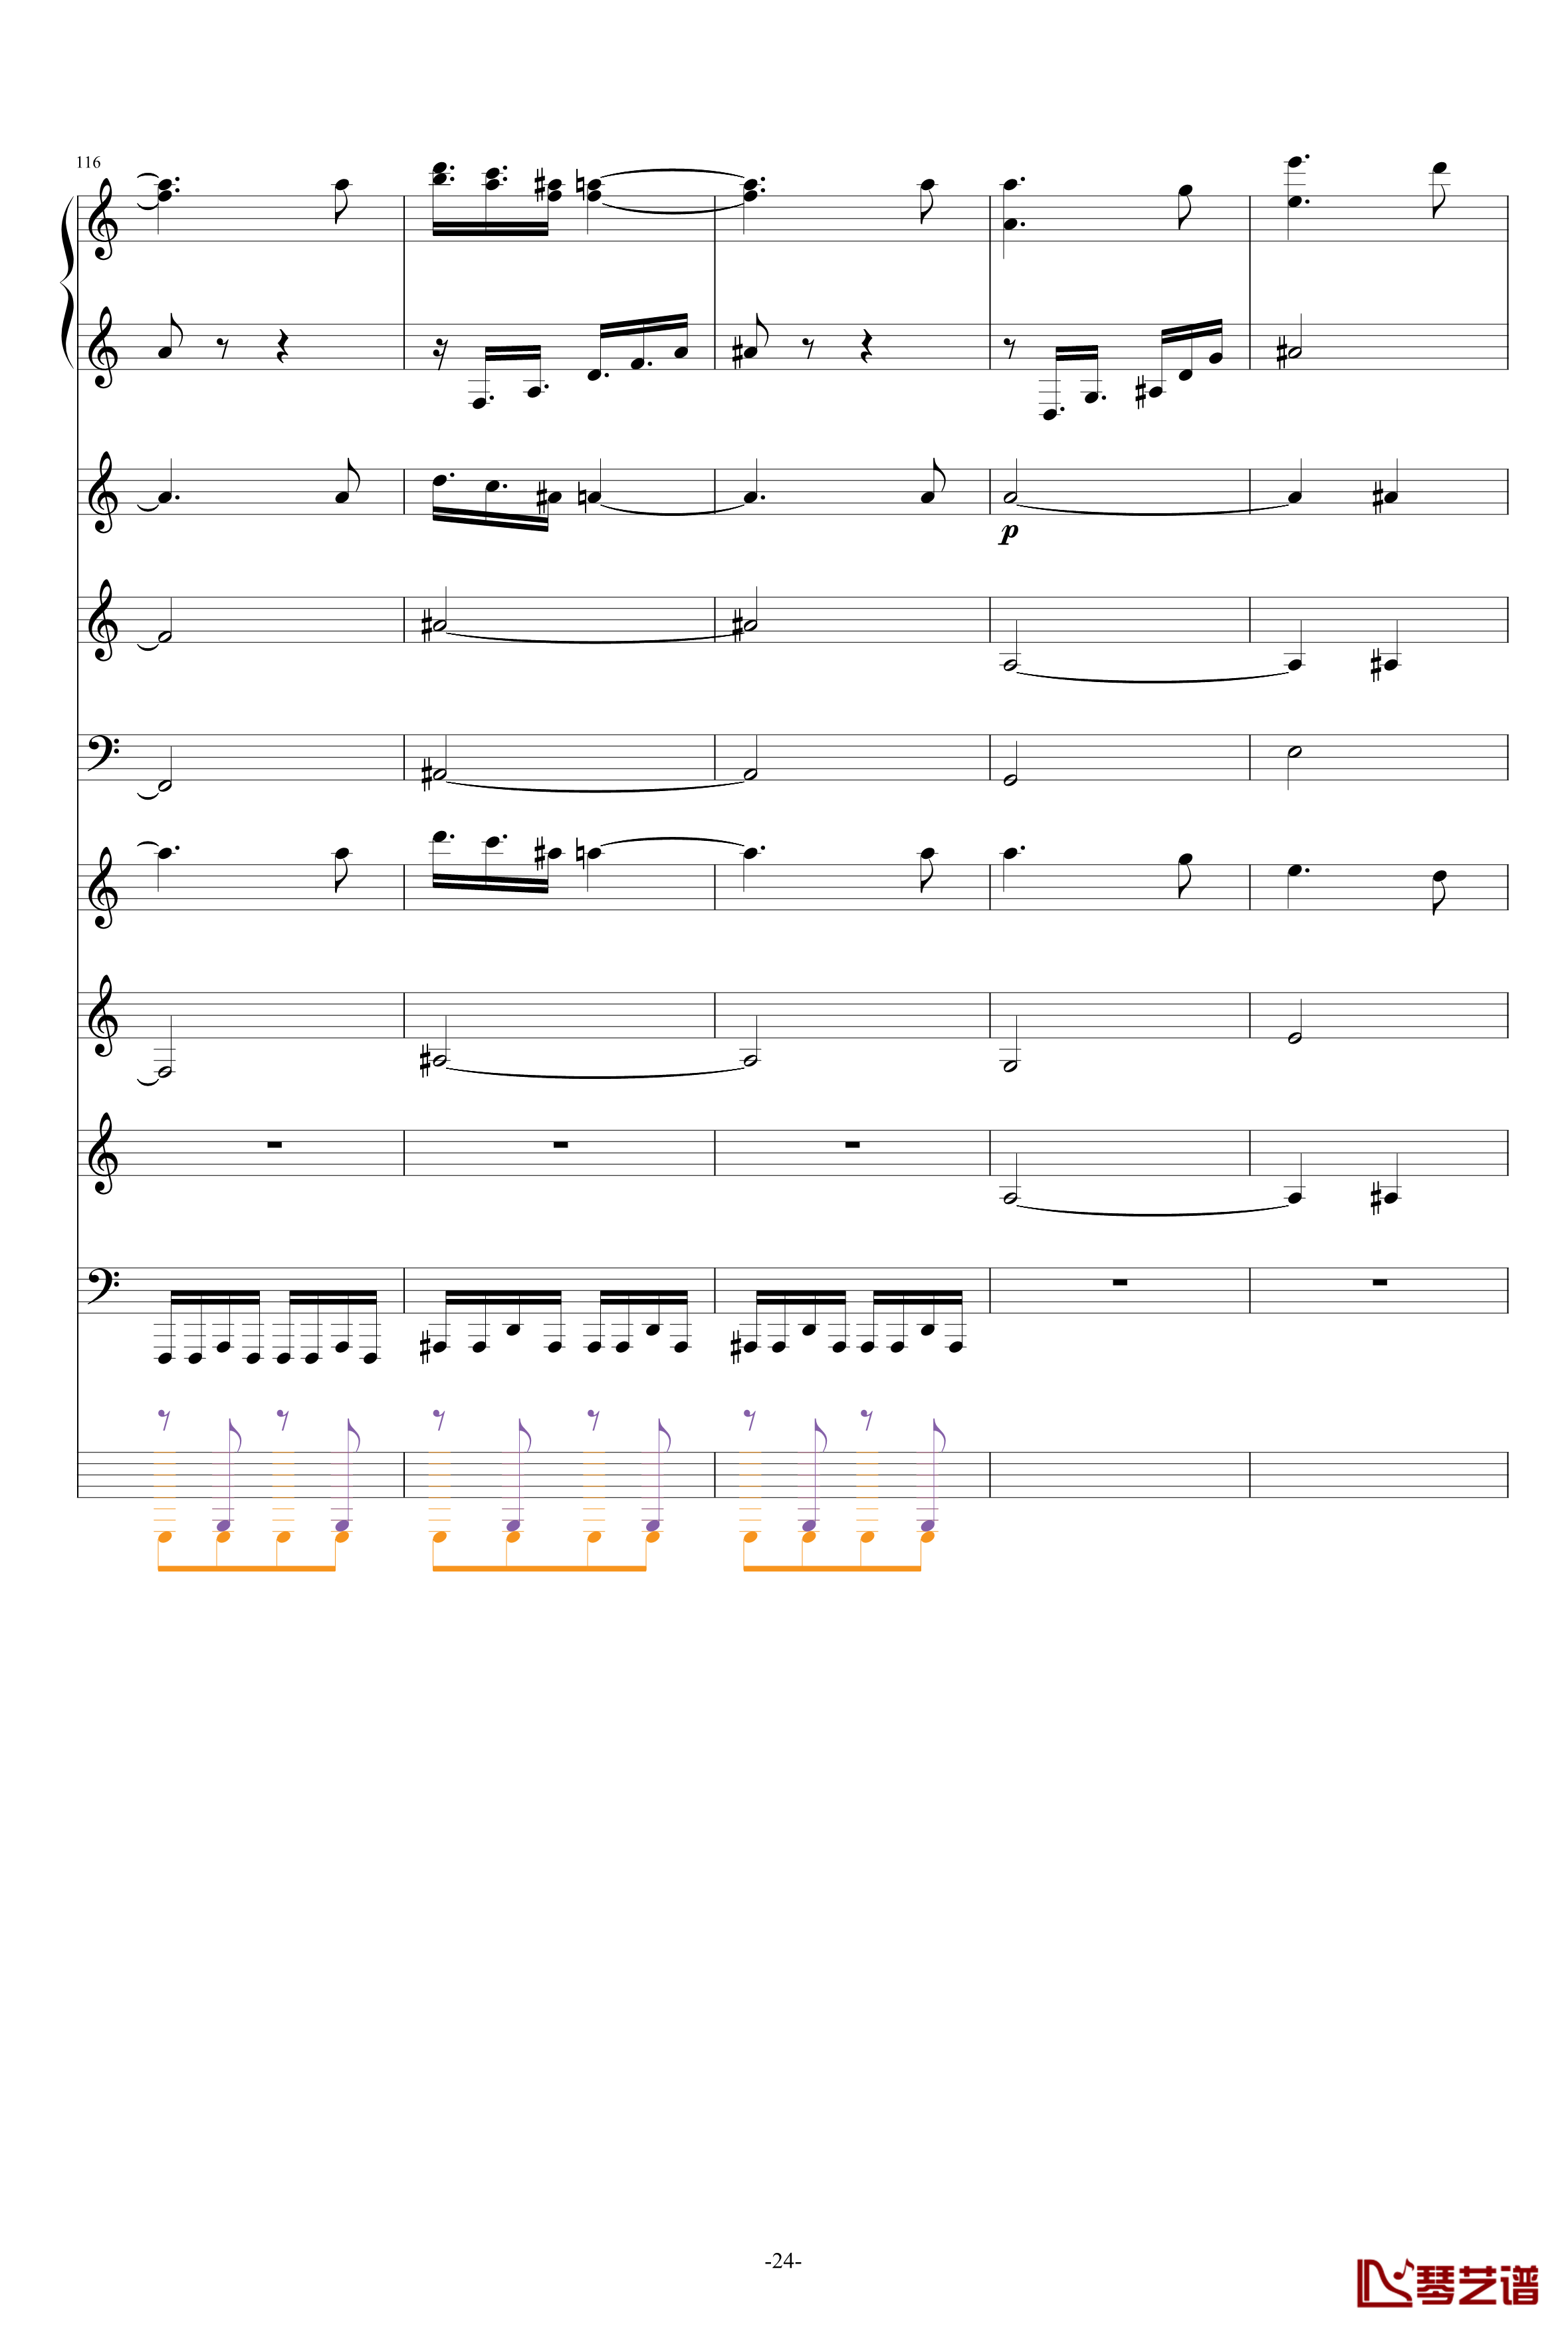 巴兰榭狂想曲钢琴谱-卓越之剑-总谱24